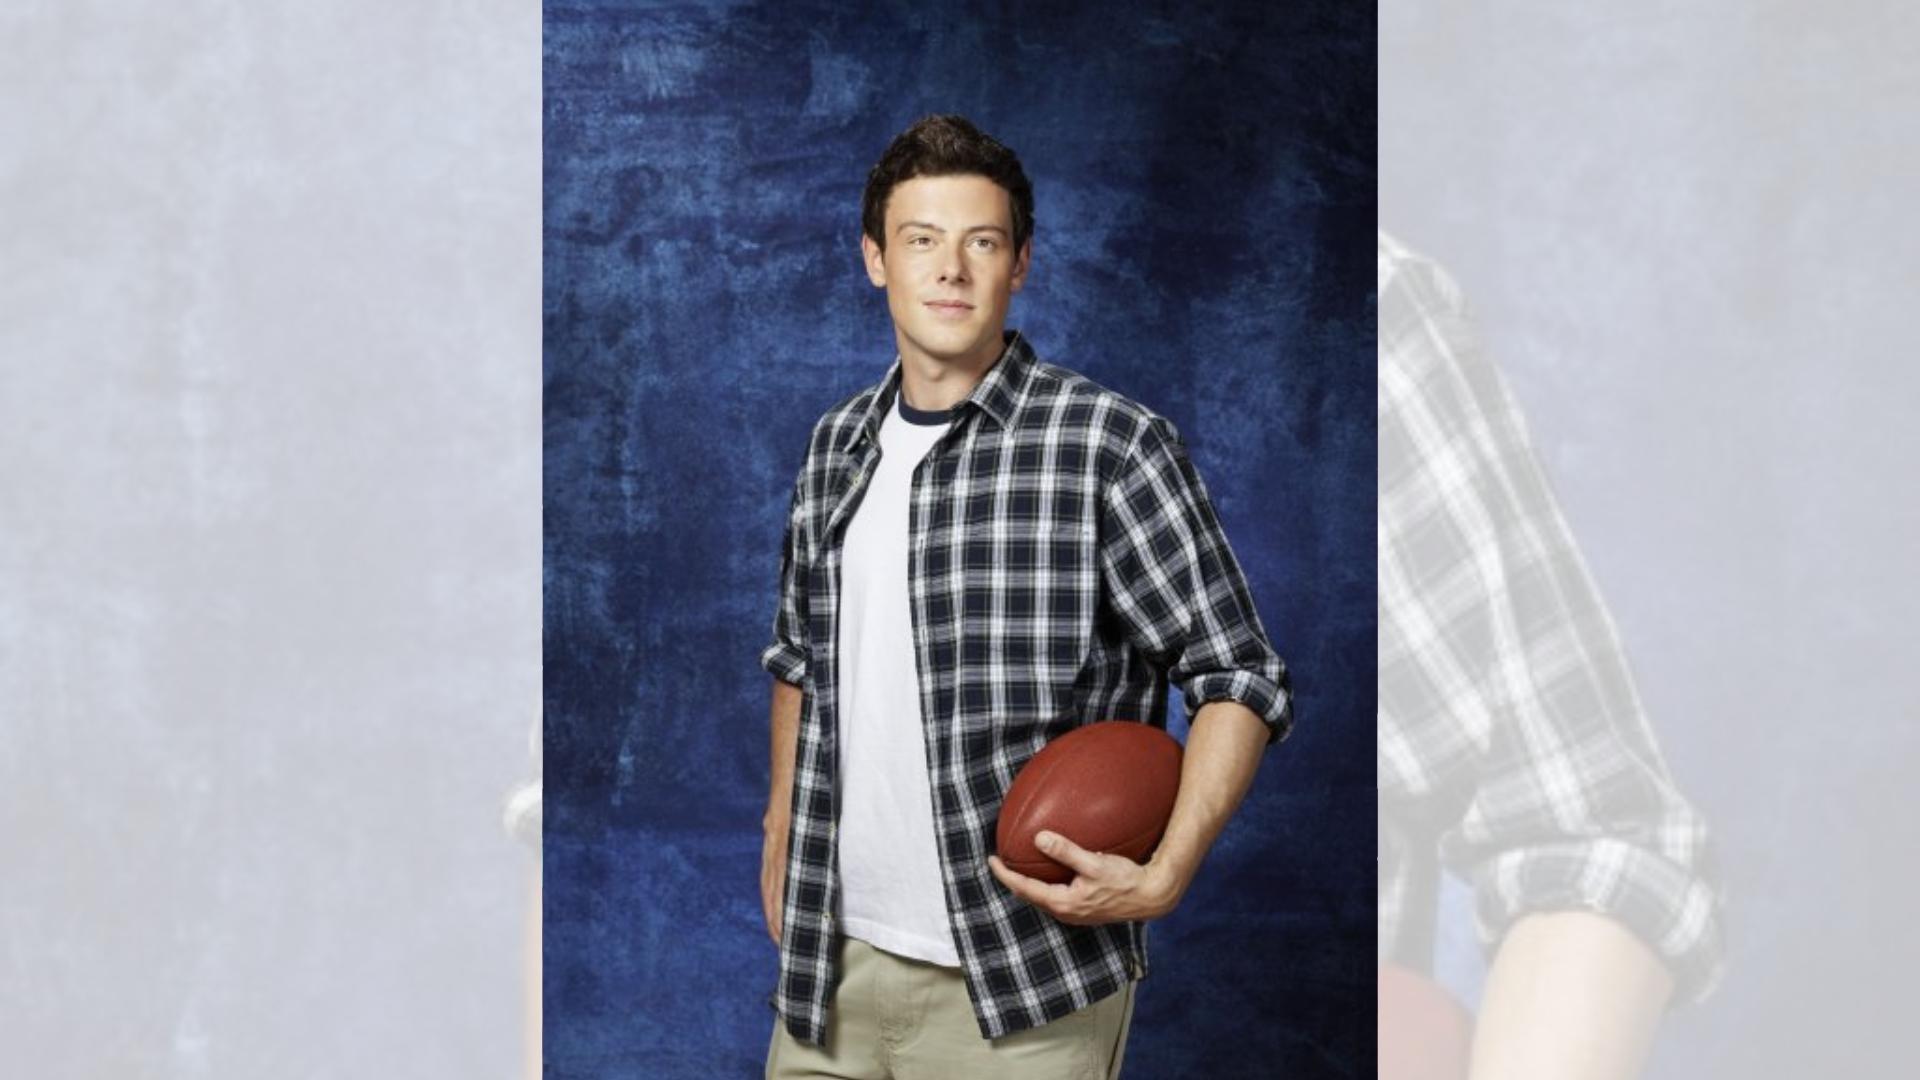 Glee n’aurait pas dû continuer après la mort de Cory Monteith (Finn) selon le créateur de la série